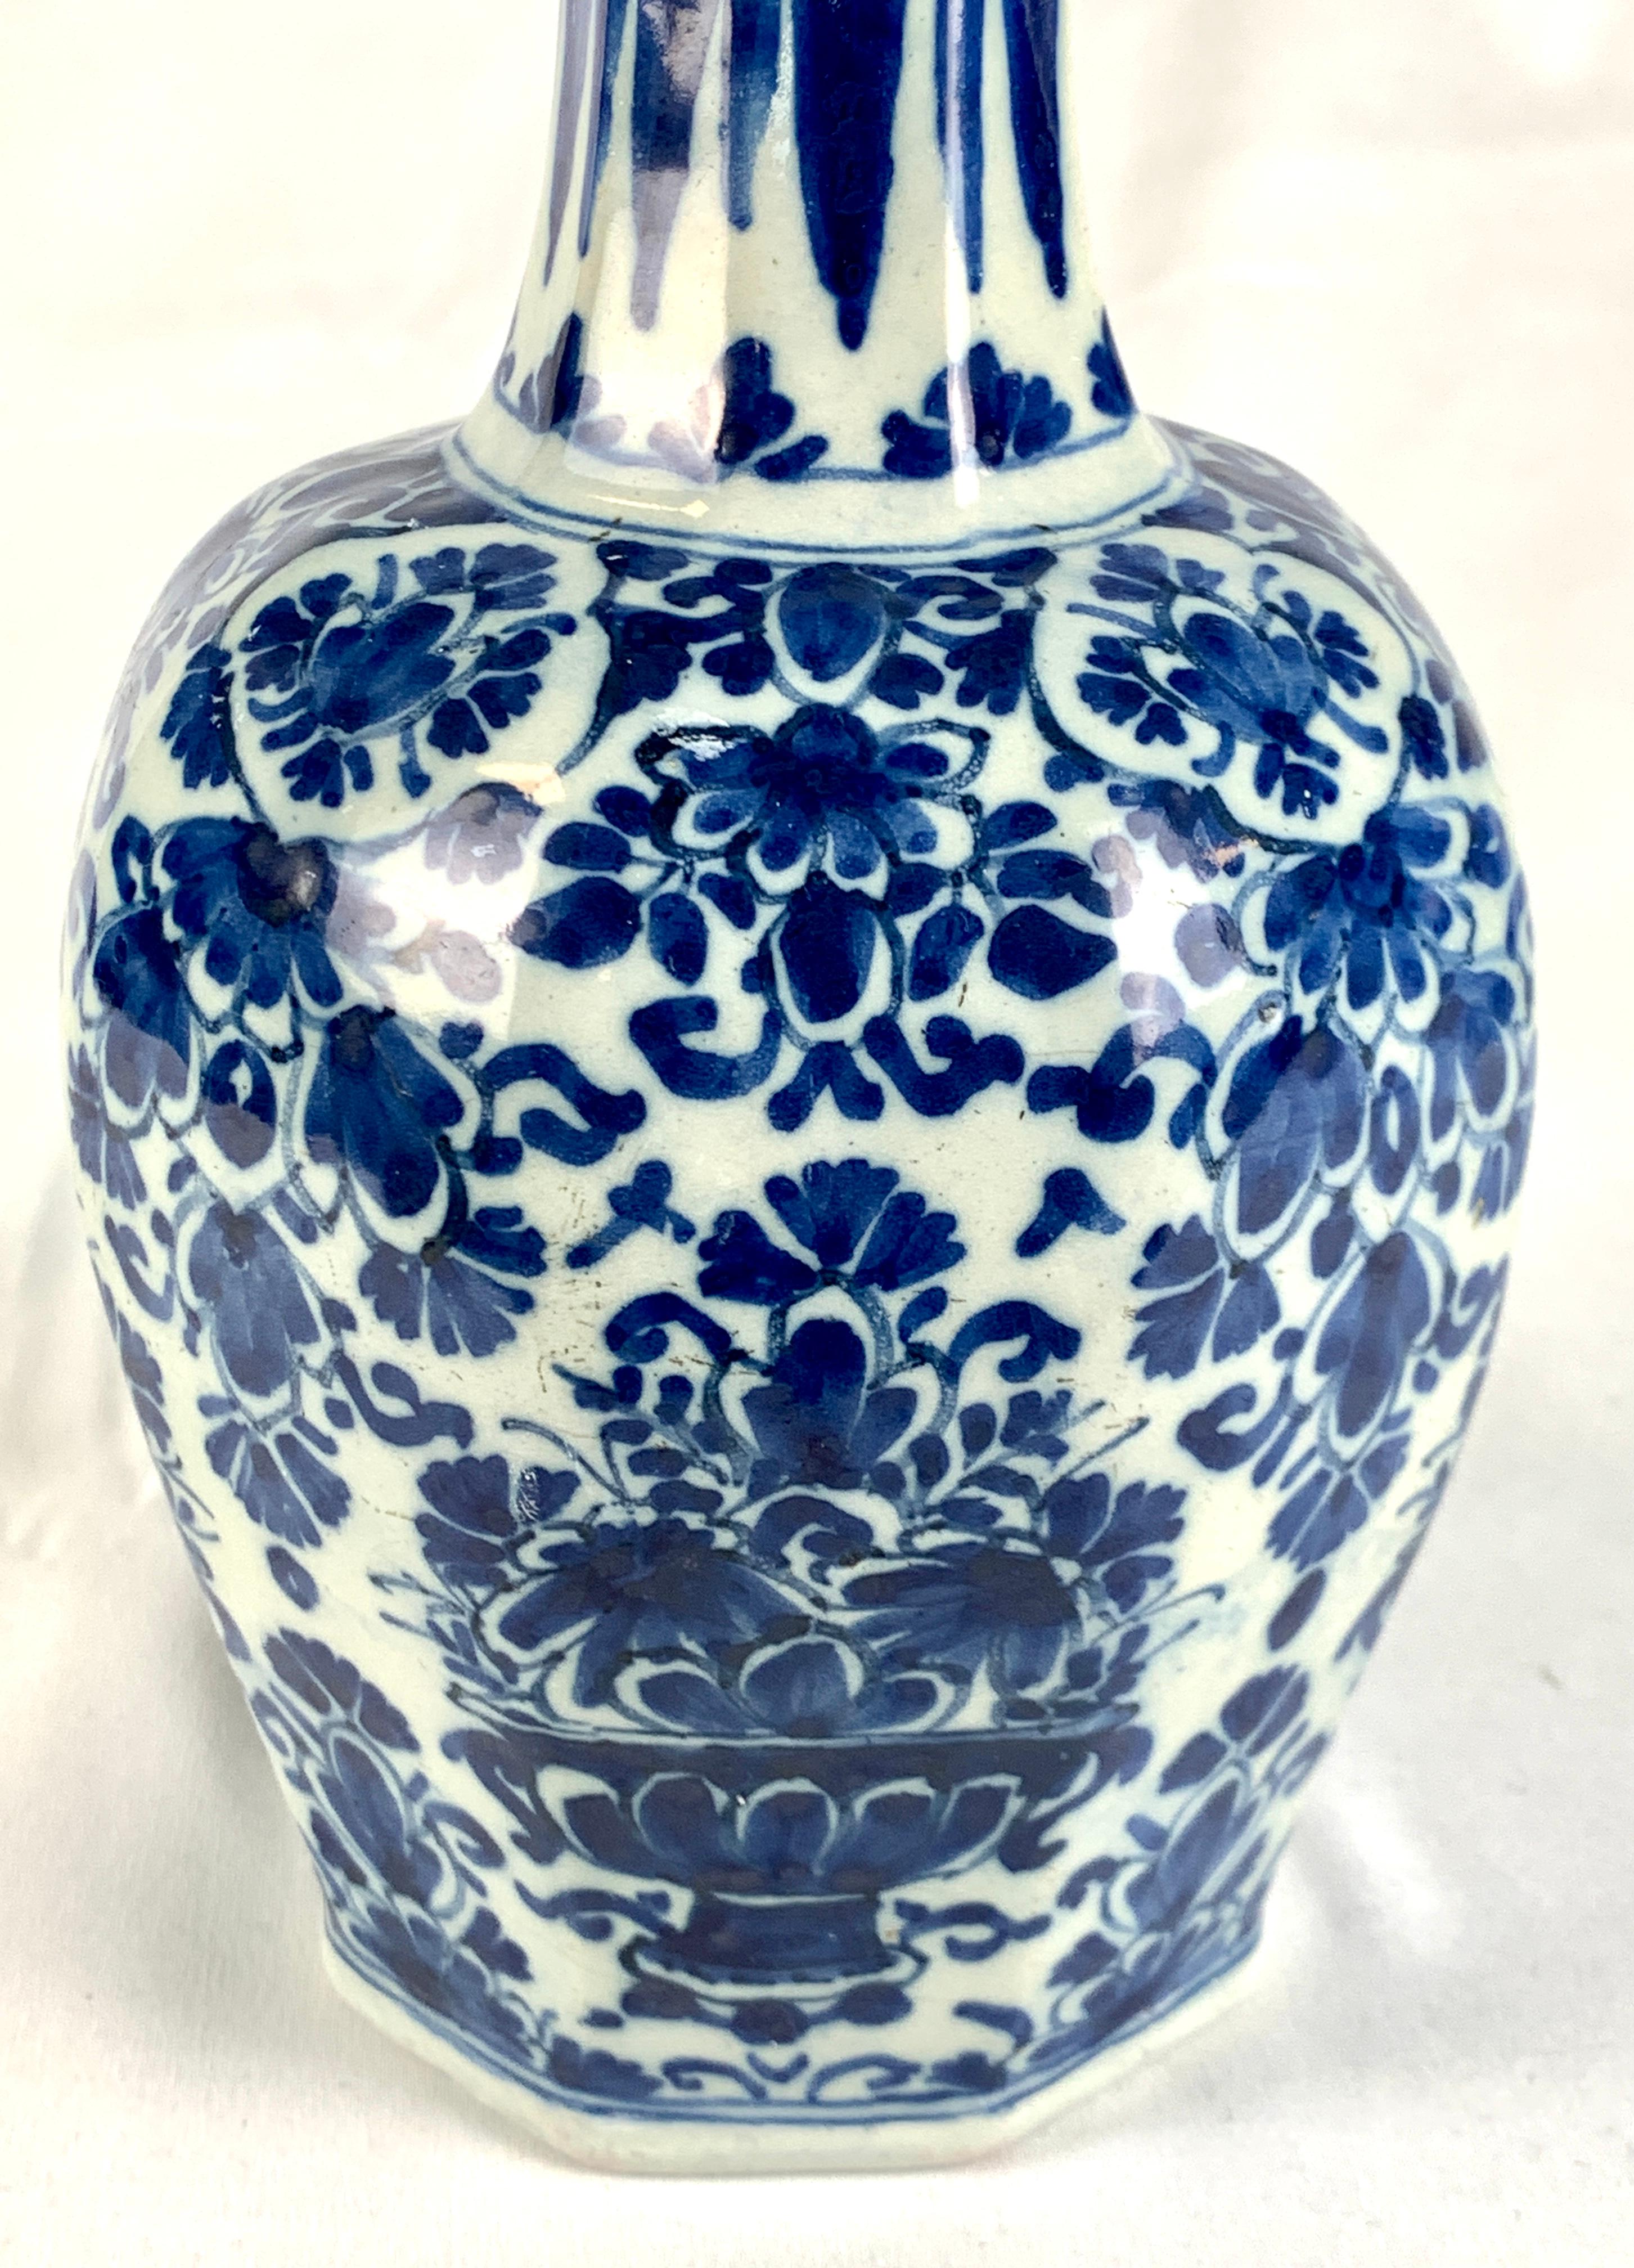 Diese um 1780 hergestellte holländische Delft-Vase aus dem 18. Jahrhundert wurde von Hand mit einem floralen Dekor aus Blumen und Ranken bemalt. 
Ein schönes, tiefes Kobaltblau bedeckt den größten Teil der Oberfläche.
Die Vase hat die